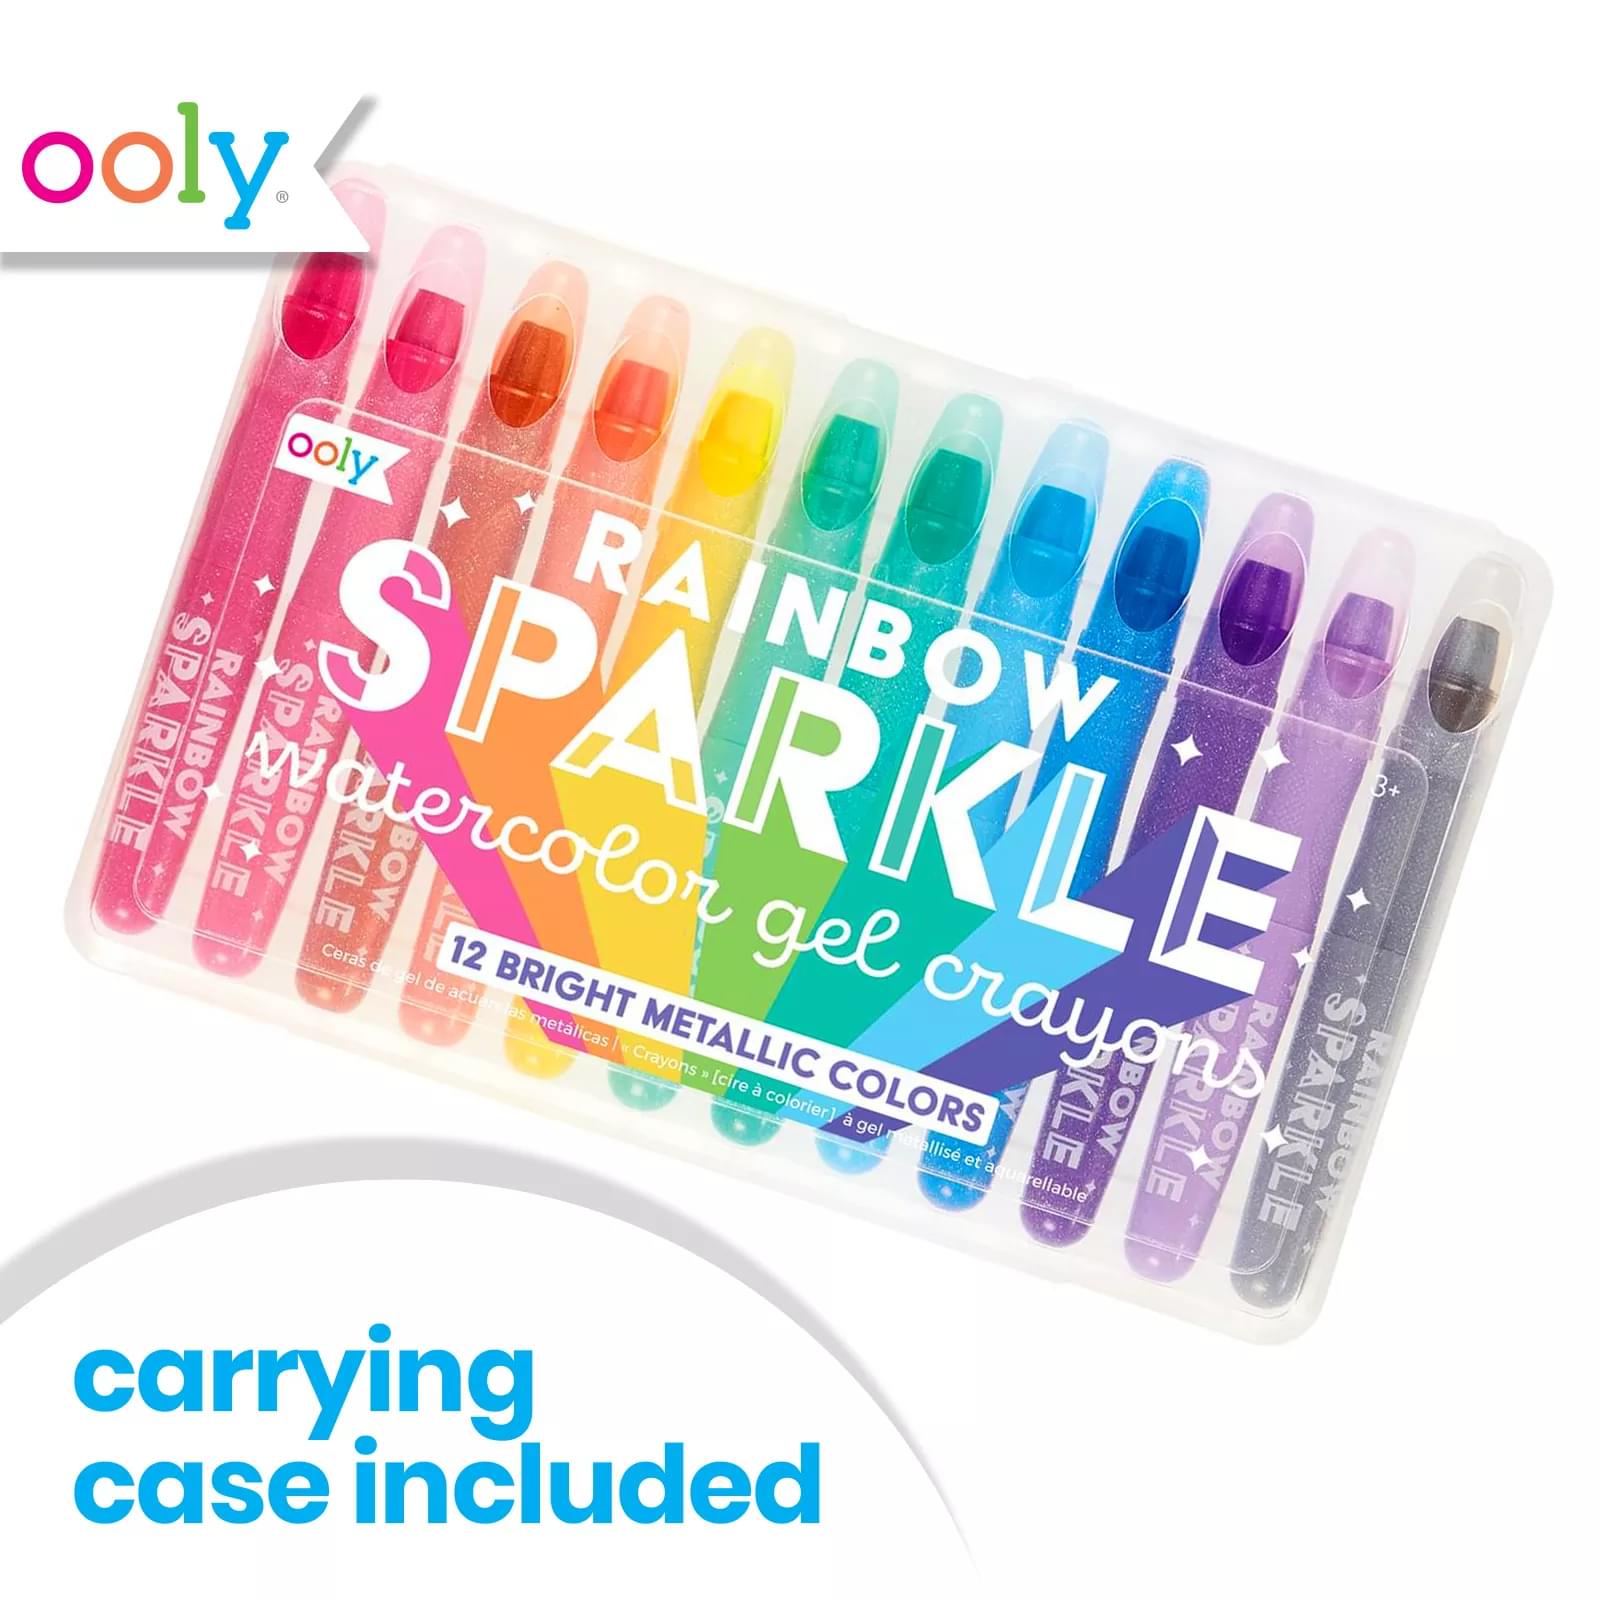 สีเทียนประกายมุก เมทัลลิก Rainbow Sparkle Watercolor Gel Crayons 12แท่ง